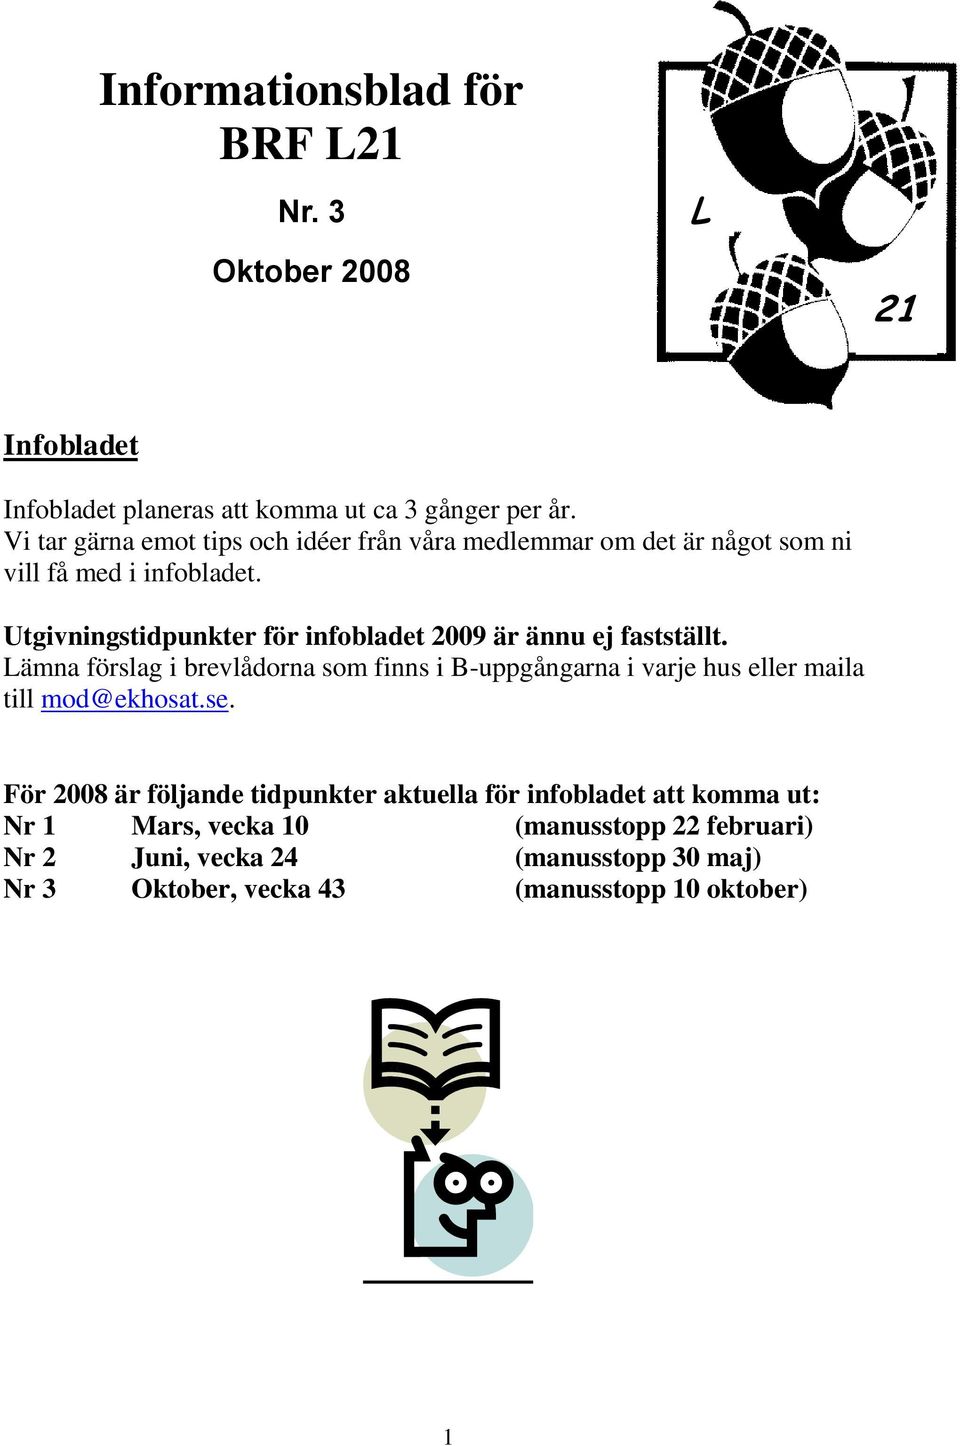 Utgivningstidpunkter för infobladet 2009 är ännu ej fastställt.